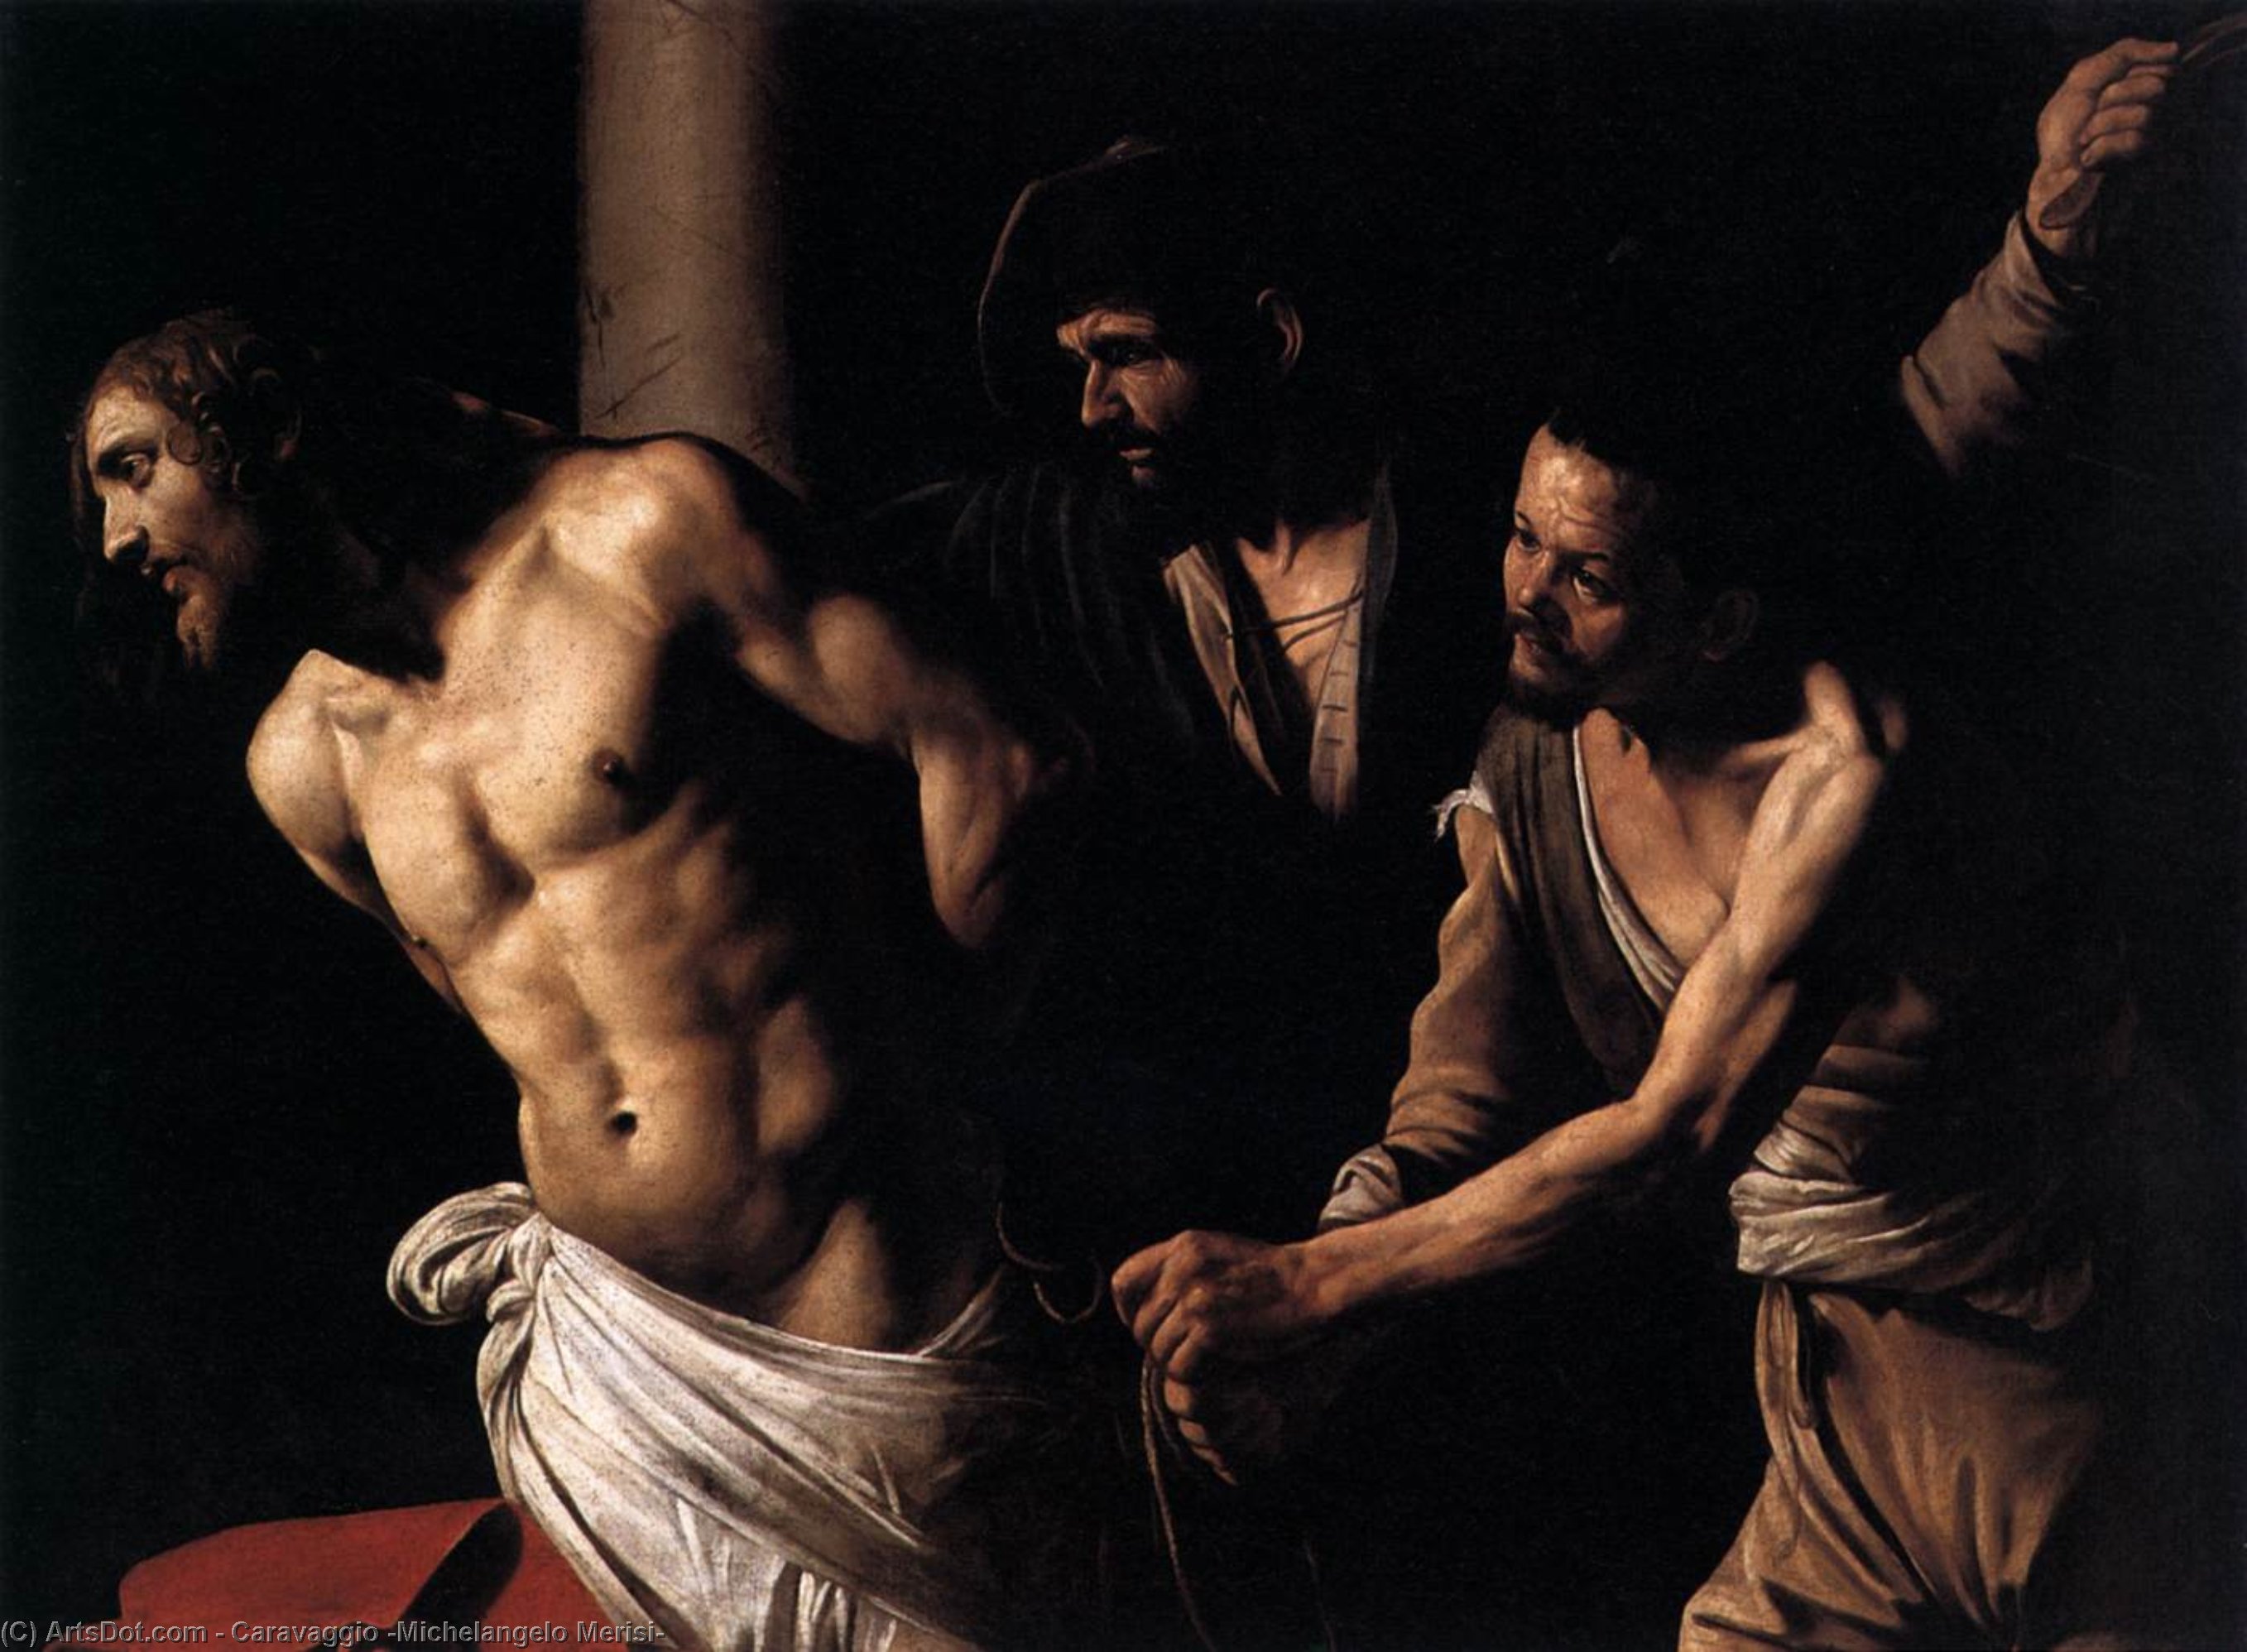 Compre Museu De Reproduções De Arte Cristo na coluna, 1607 por Caravaggio (Michelangelo Merisi) (1571-1610, Spain) | ArtsDot.com